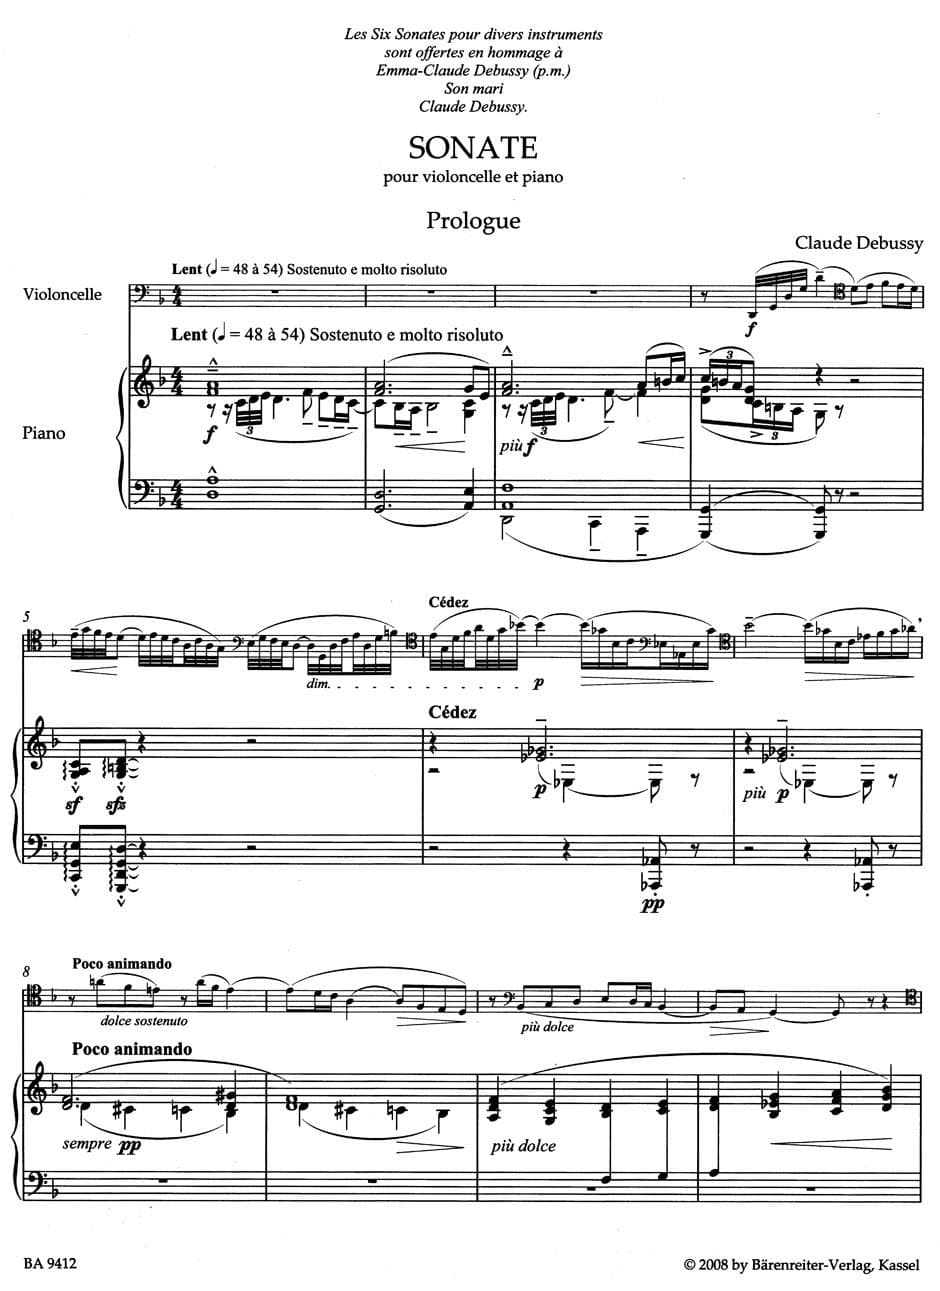 Debussy, Claude - Cello Sonata - for Cello and Piano - edited by Regina Back, Douglas Woodfull-Harris - Baerenreiter